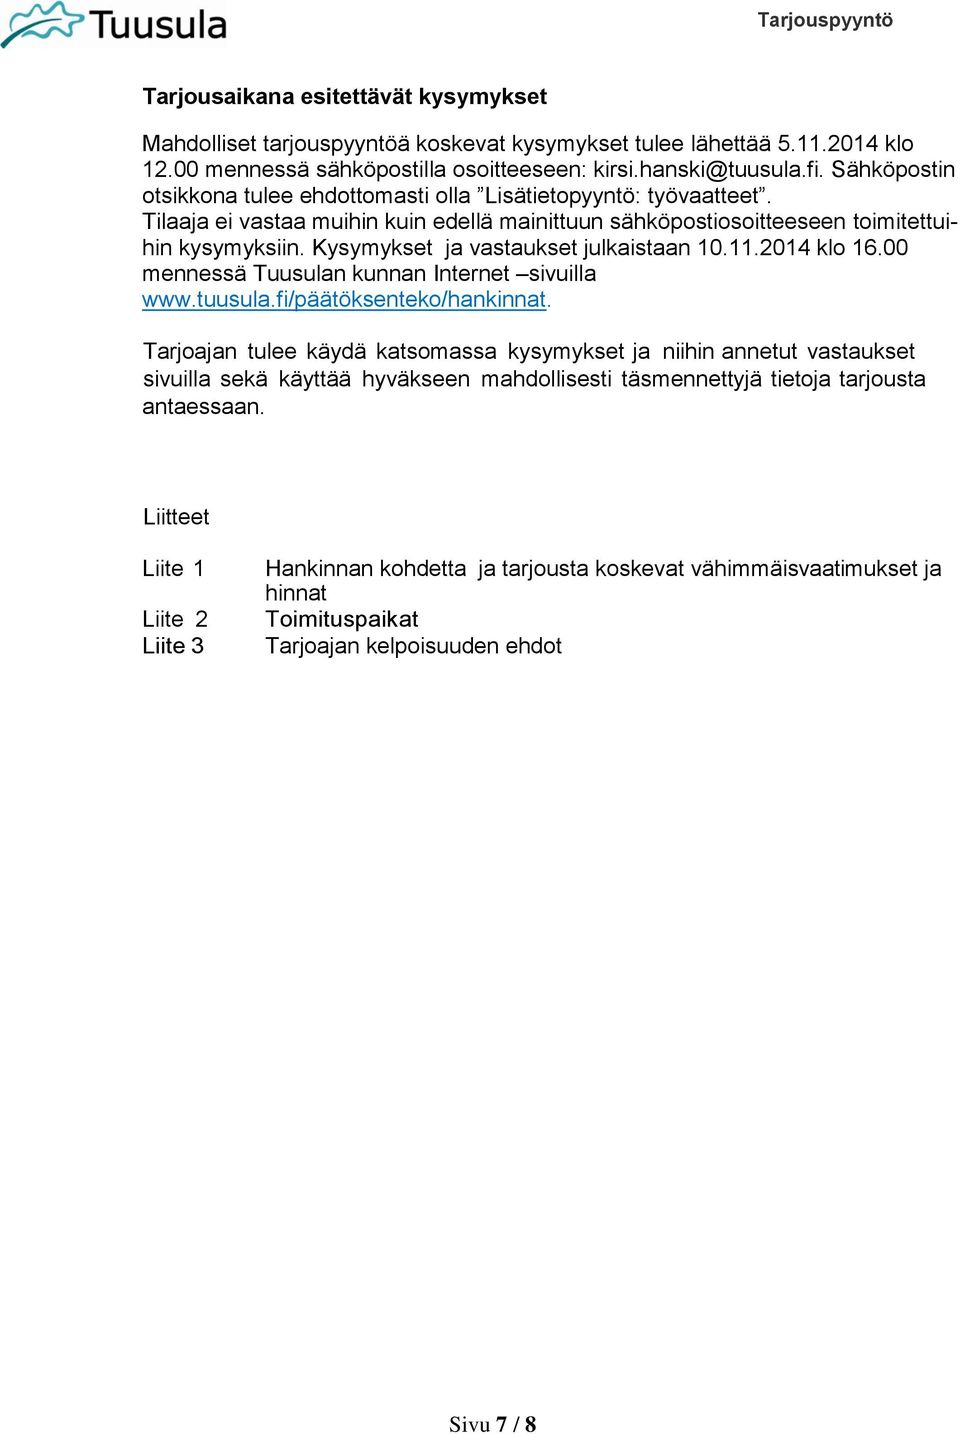 Kysymykset ja vastaukset julkaistaan 10.11.2014 klo 16.00 mennessä Tuusulan kunnan Internet sivuilla www.tuusula.fi/päätöksenteko/hankinnat.